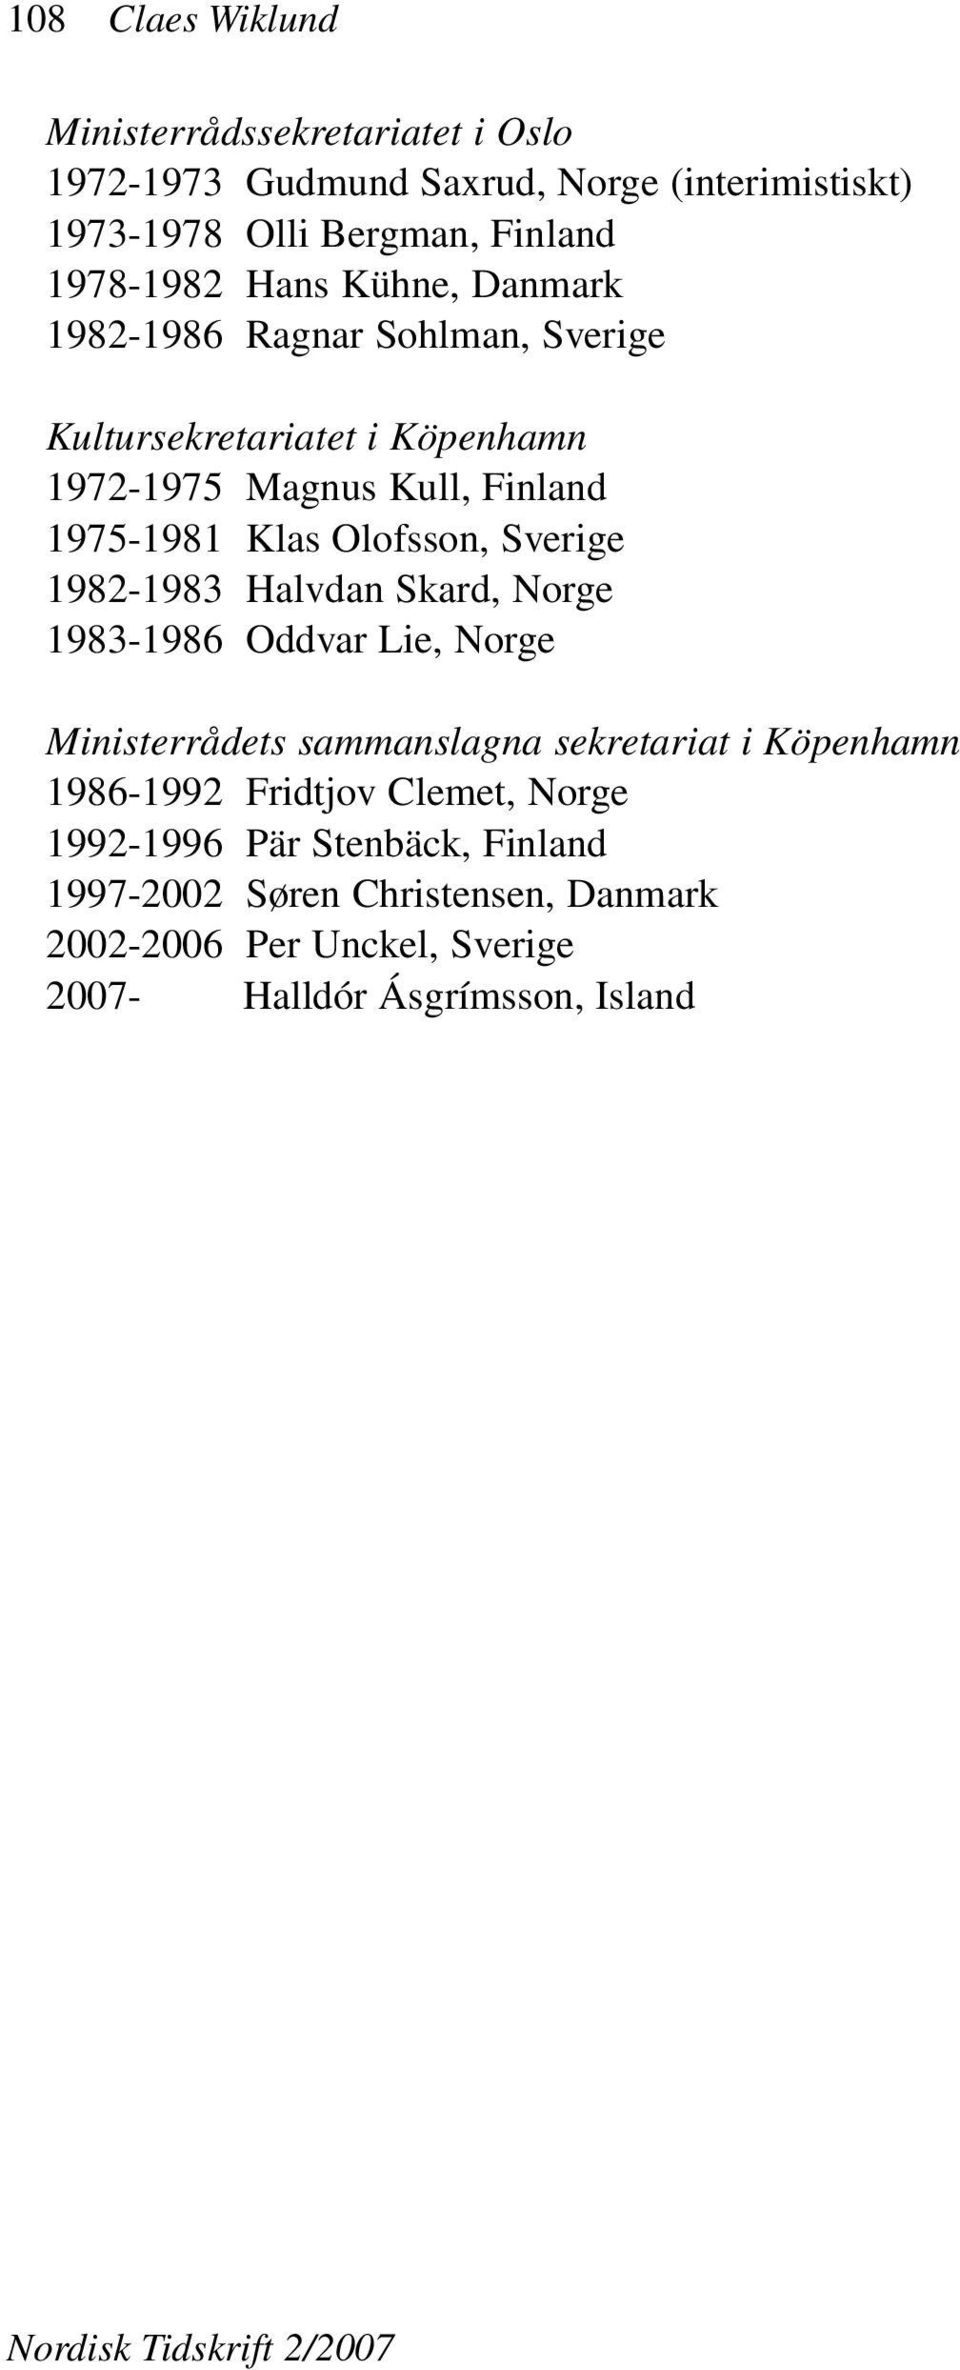 Sverige 1982-1983 Halvdan Skard, Norge 1983-1986 Oddvar Lie, Norge Ministerrådets sammanslagna sekretariat i Köpenhamn 1986-1992 Fridtjov